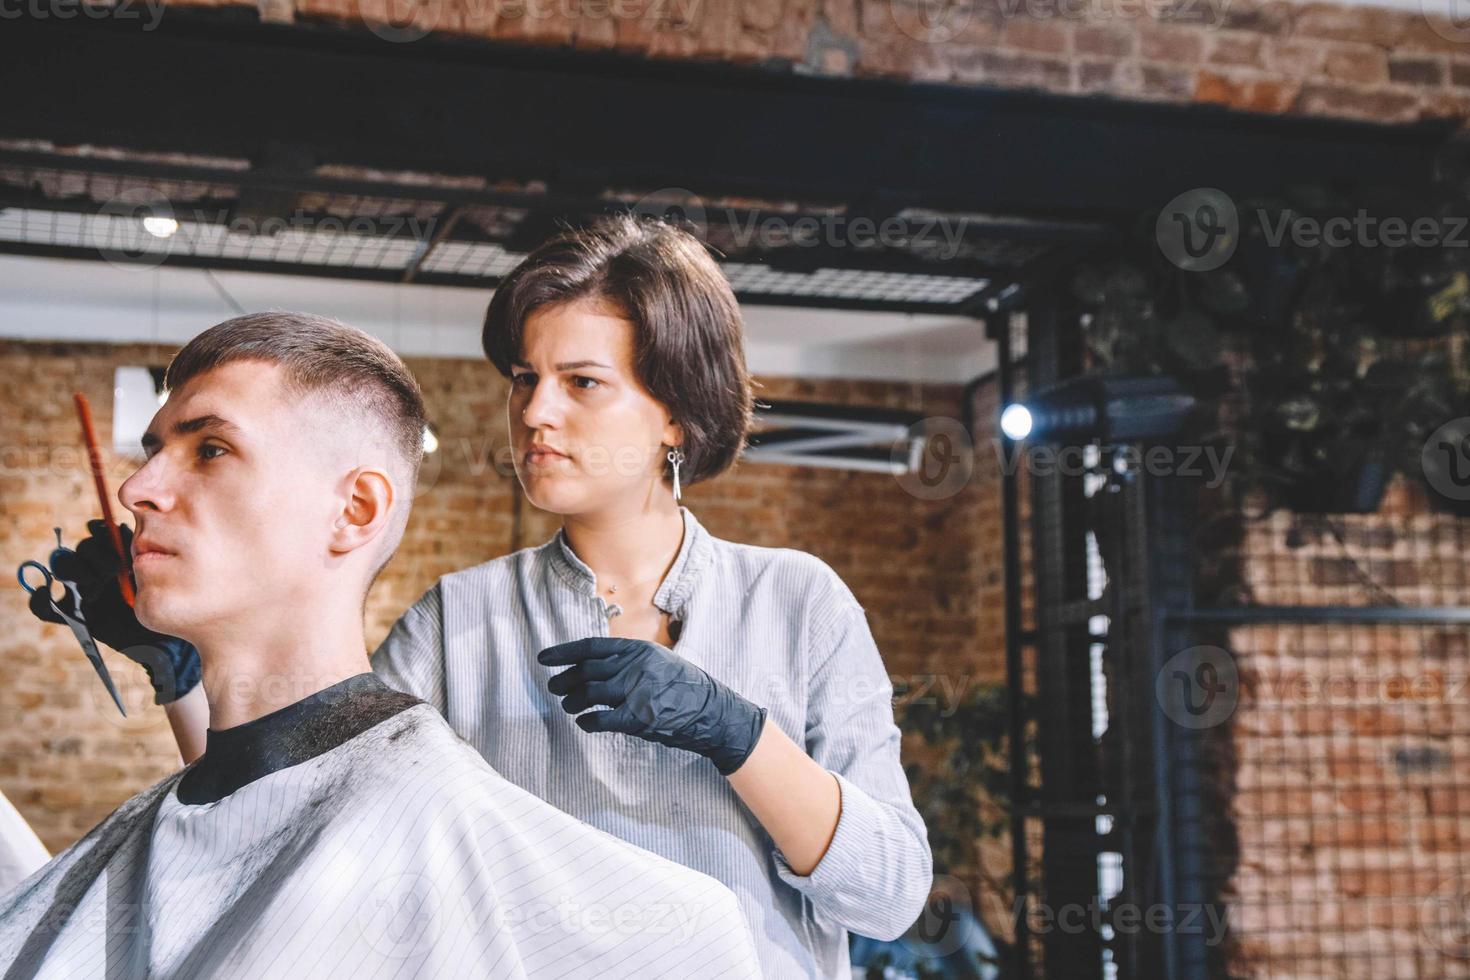 cabeleireira linda corta o cabelo da cabeça da cliente com um aparador elétrico na barbearia. publicidade e conceito de barbearia. lugar para texto ou publicidade foto